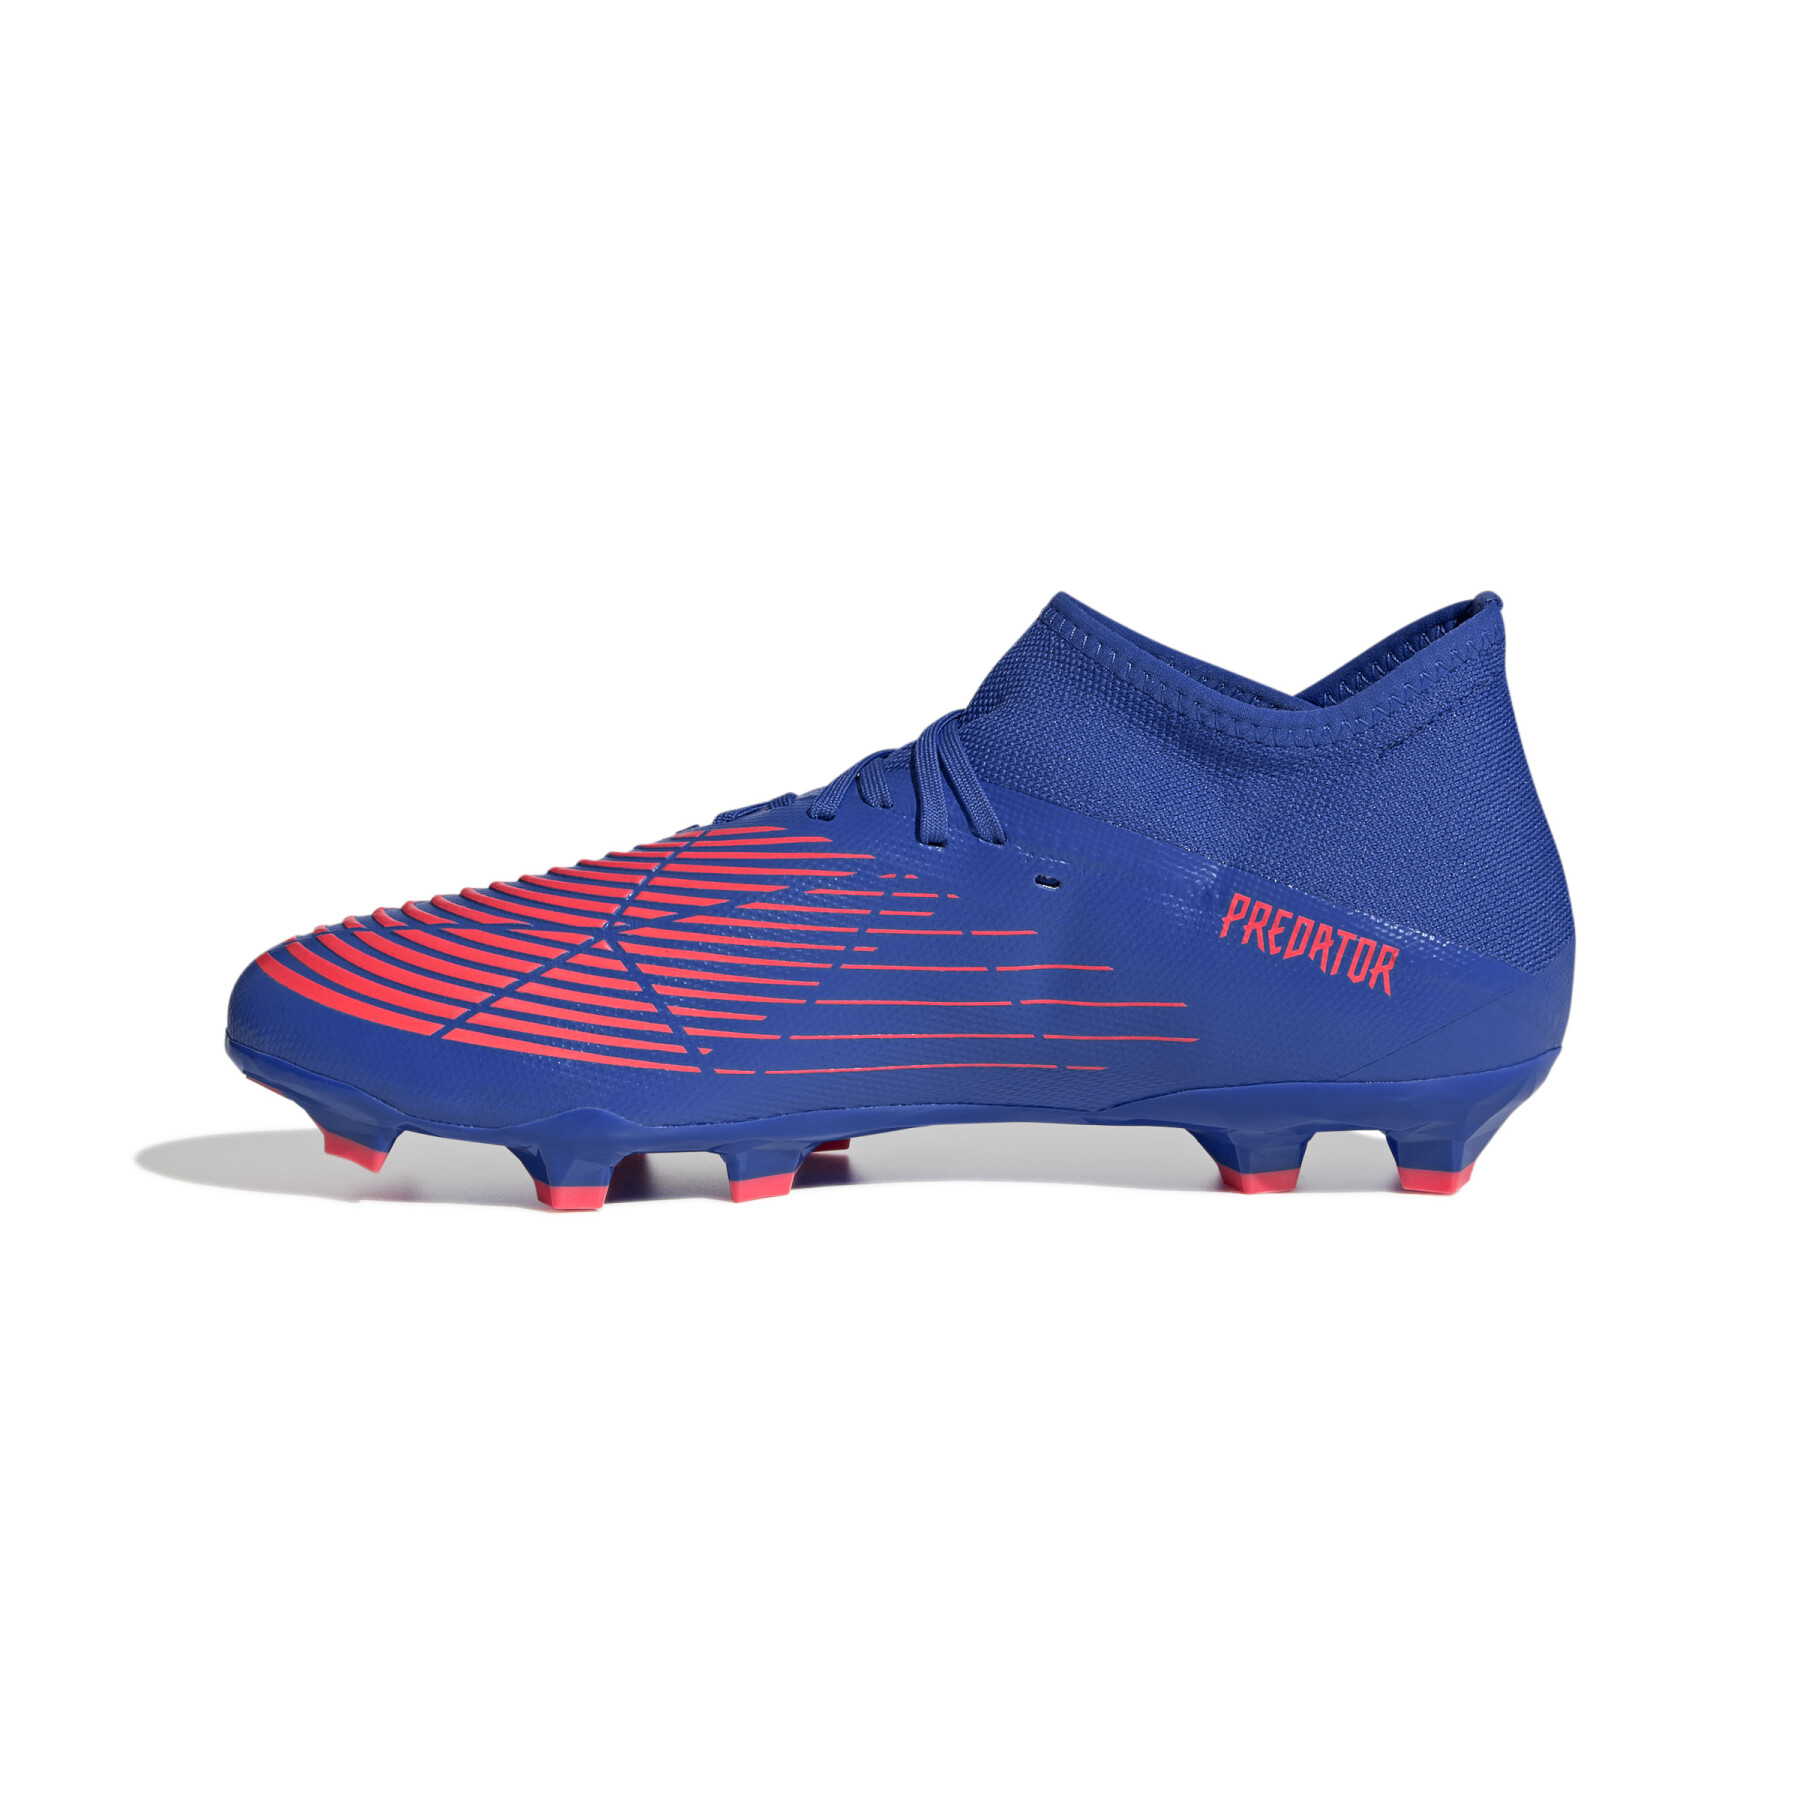 Chaussures de football adidas Predator Edge.3 FG - Sapphire Edge Pack